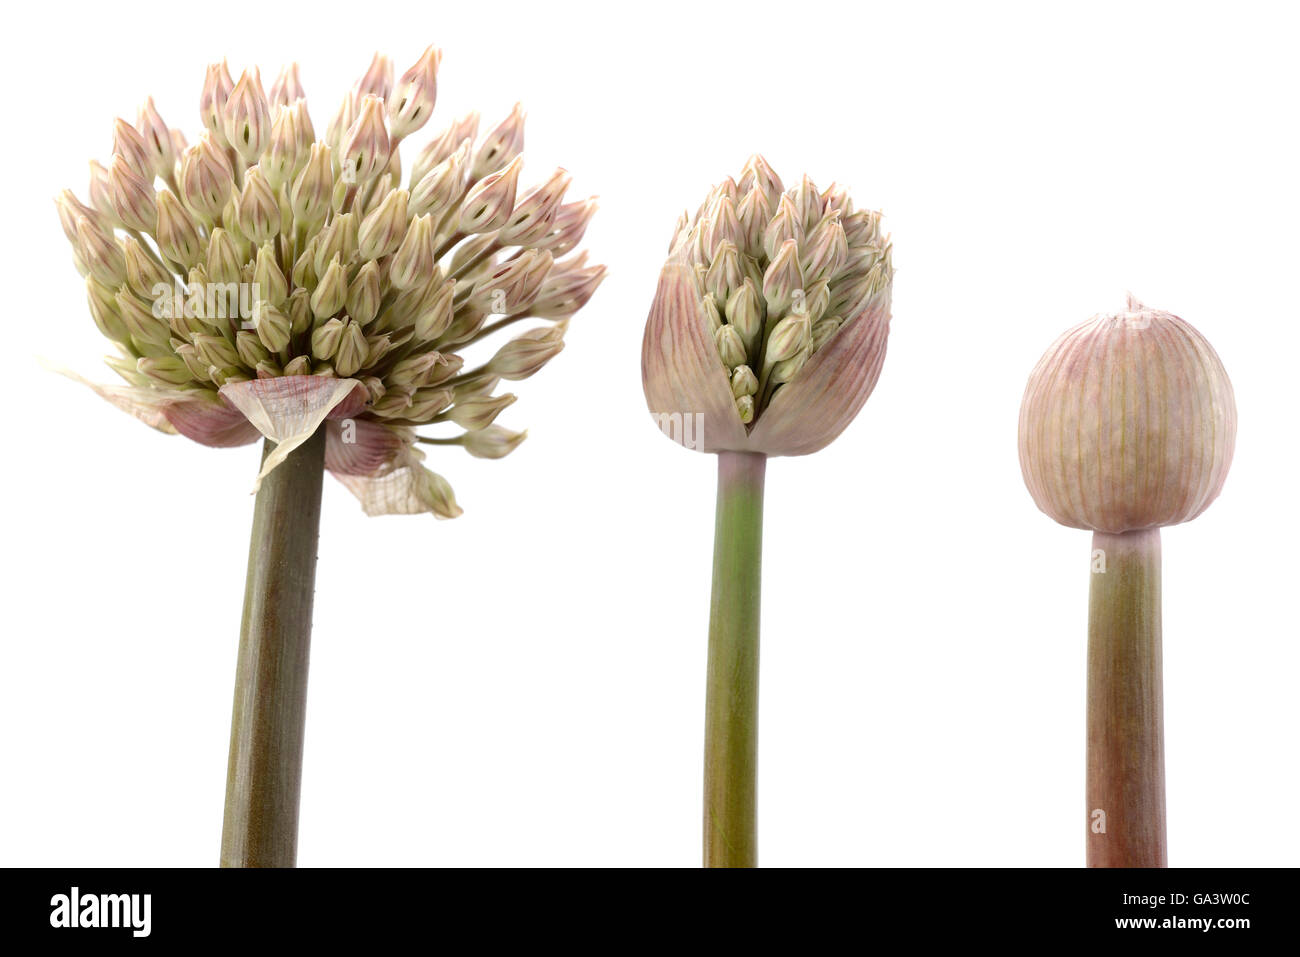 Carataviense Allium ail AGA Kara Tau Trois boutons de fleurs à différents stades de développement peuvent Banque D'Images